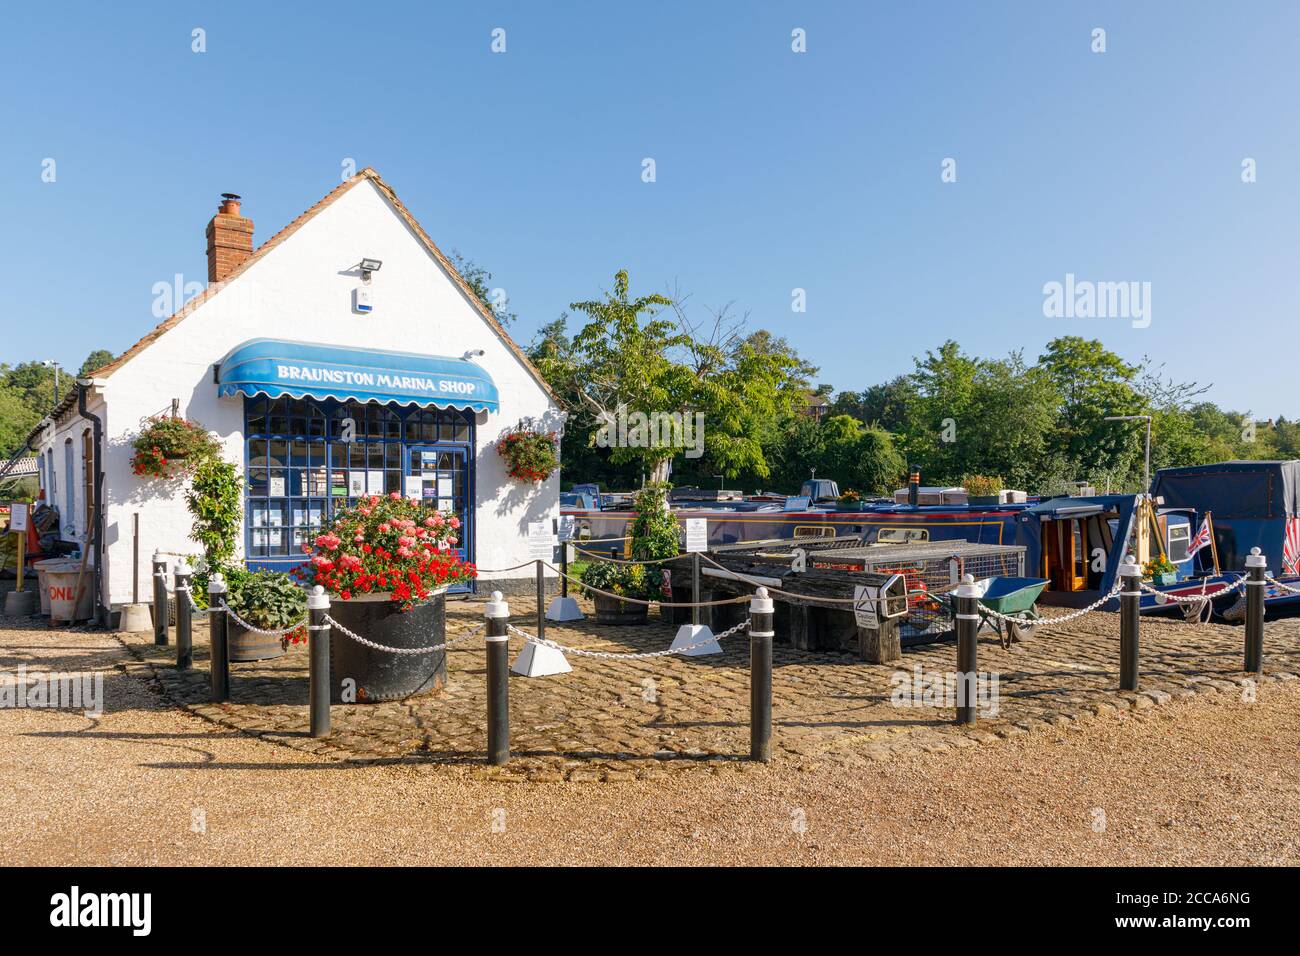 Braunston, Northamptonshire, UK - 20/08/20: Der Braunston Marina Shop verkauft Artikel für Bootsfahrer, die die nahe gelegenen Kanäle Grand Union und Oxford nutzen. Stockfoto